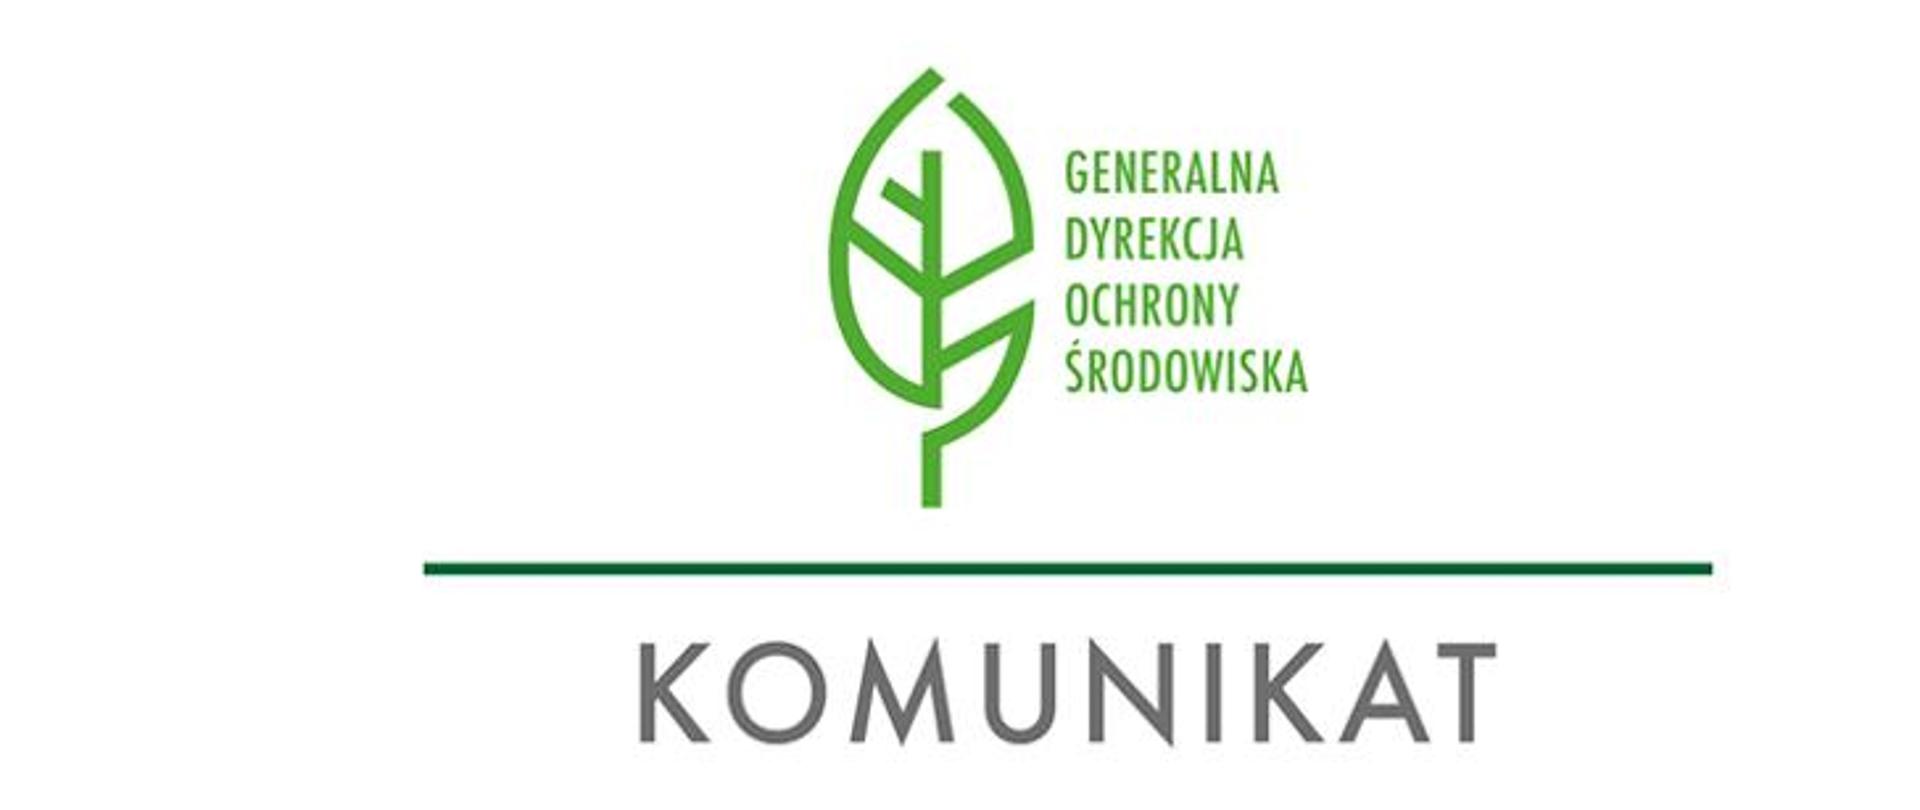 zielone logo- zielony liść i napis generalna dyrekcja ochrony środowiska. Niżej napis komunikat